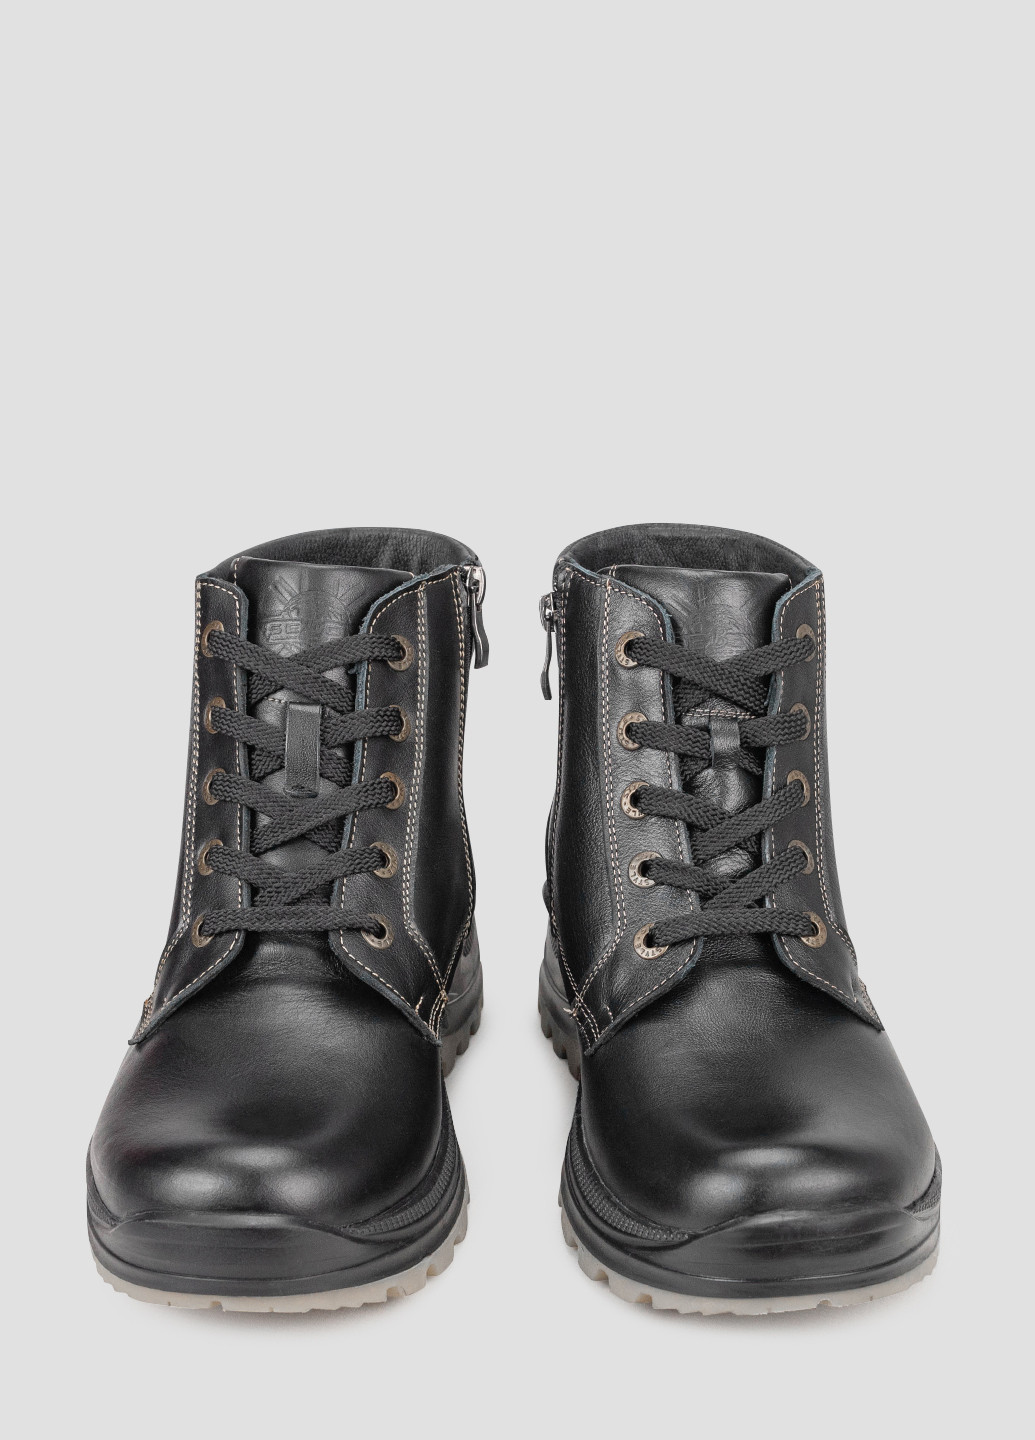 Черные зимние ботинки Seboni